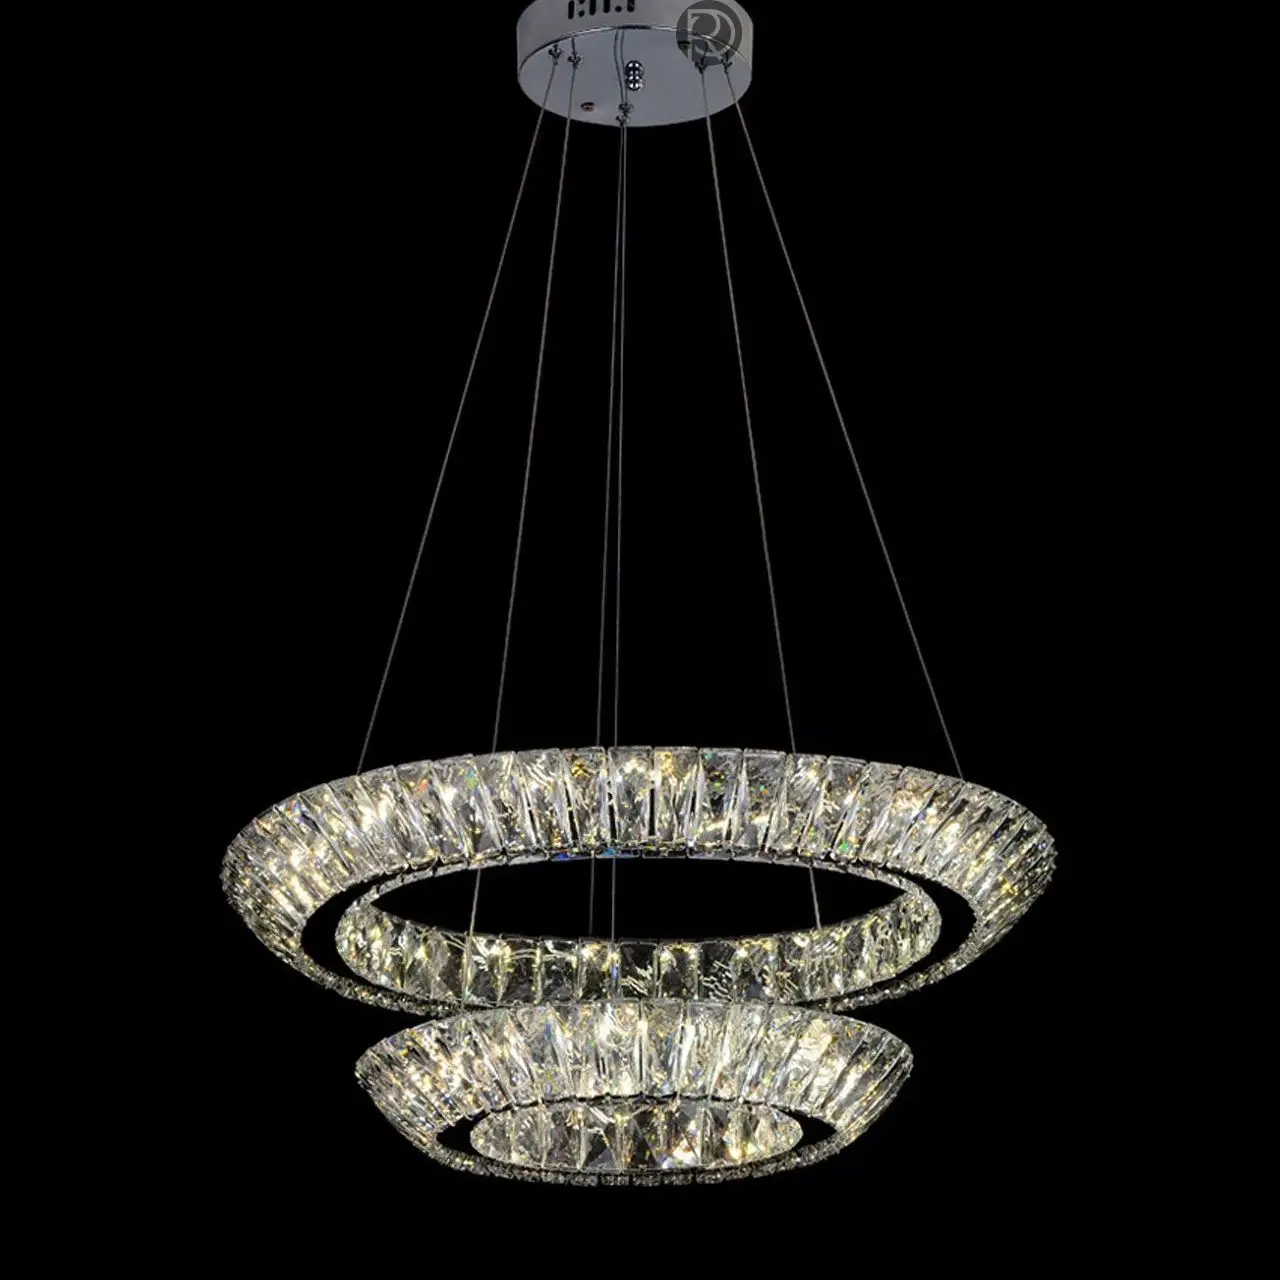 LAMPALUX chandelier ROUND by Romatti